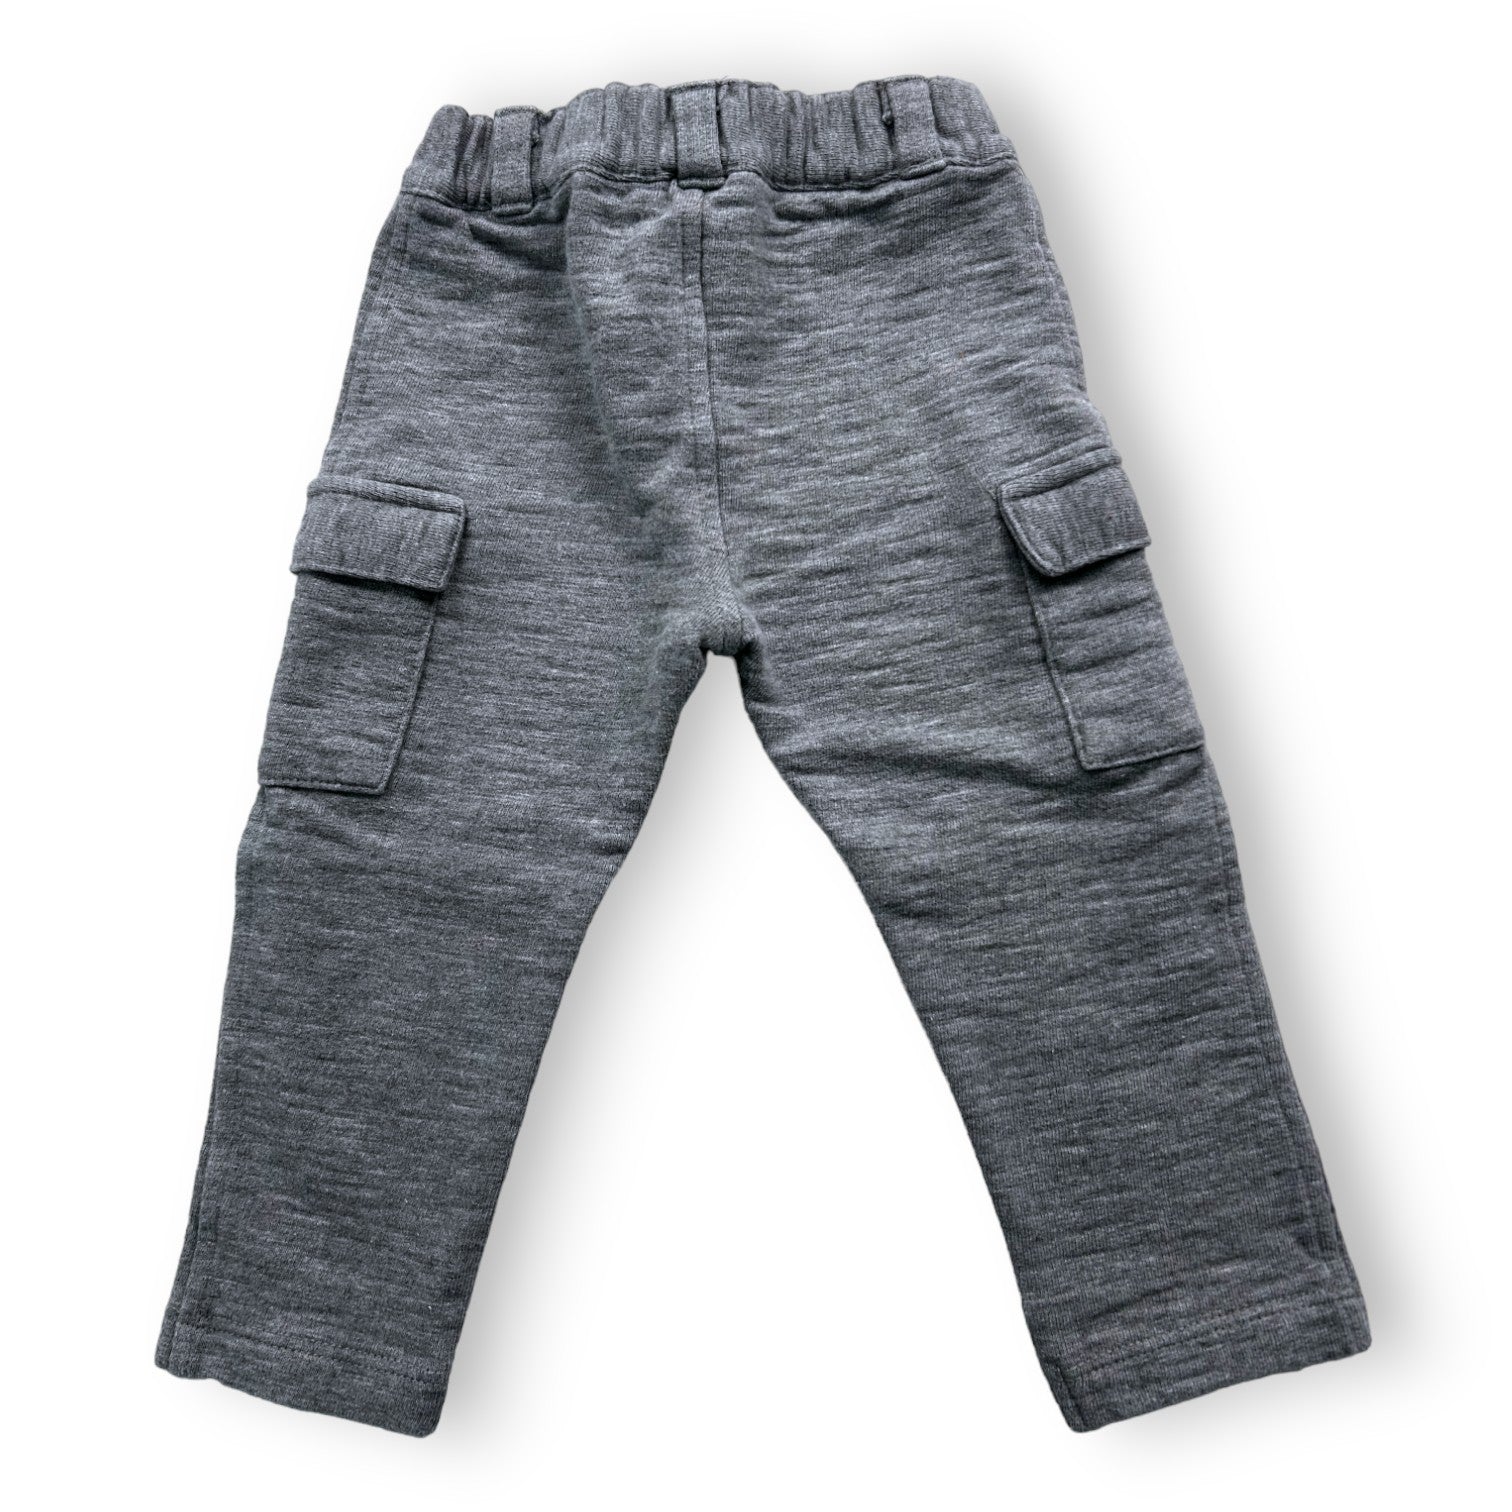 PETIT BATEAU - Pantalon gris en molleton  - 18 mois